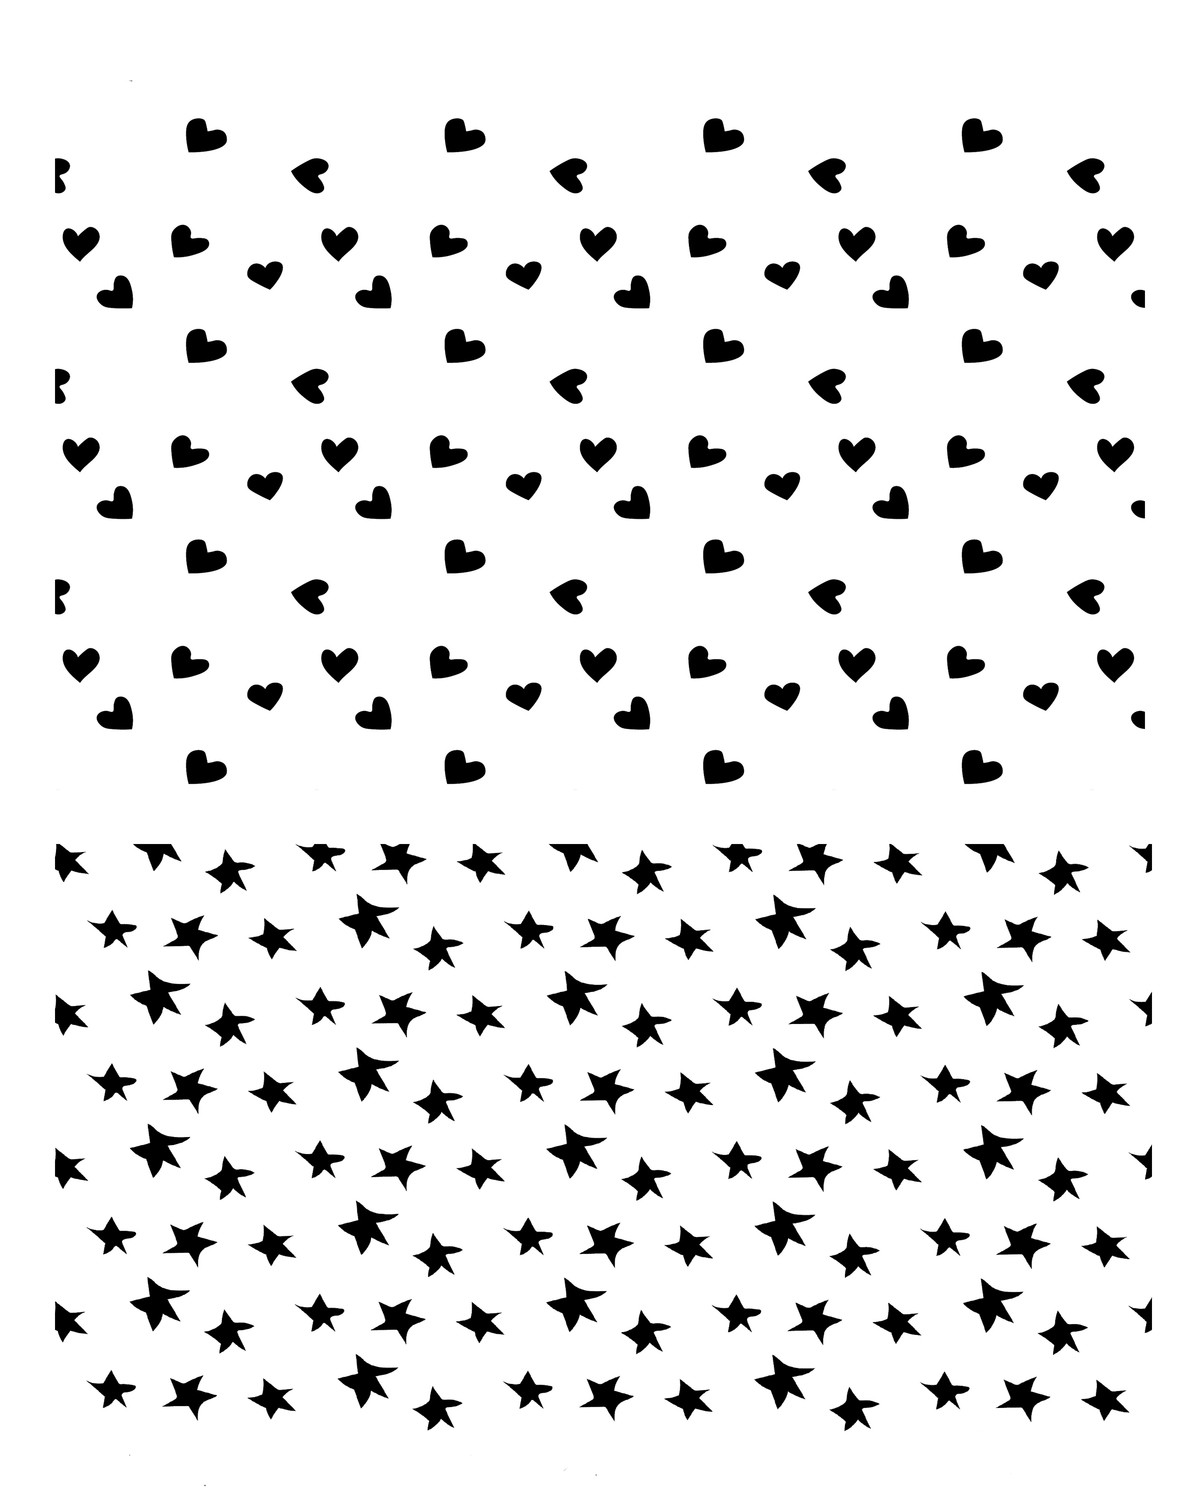 Stars and Hearts stencil 8x10